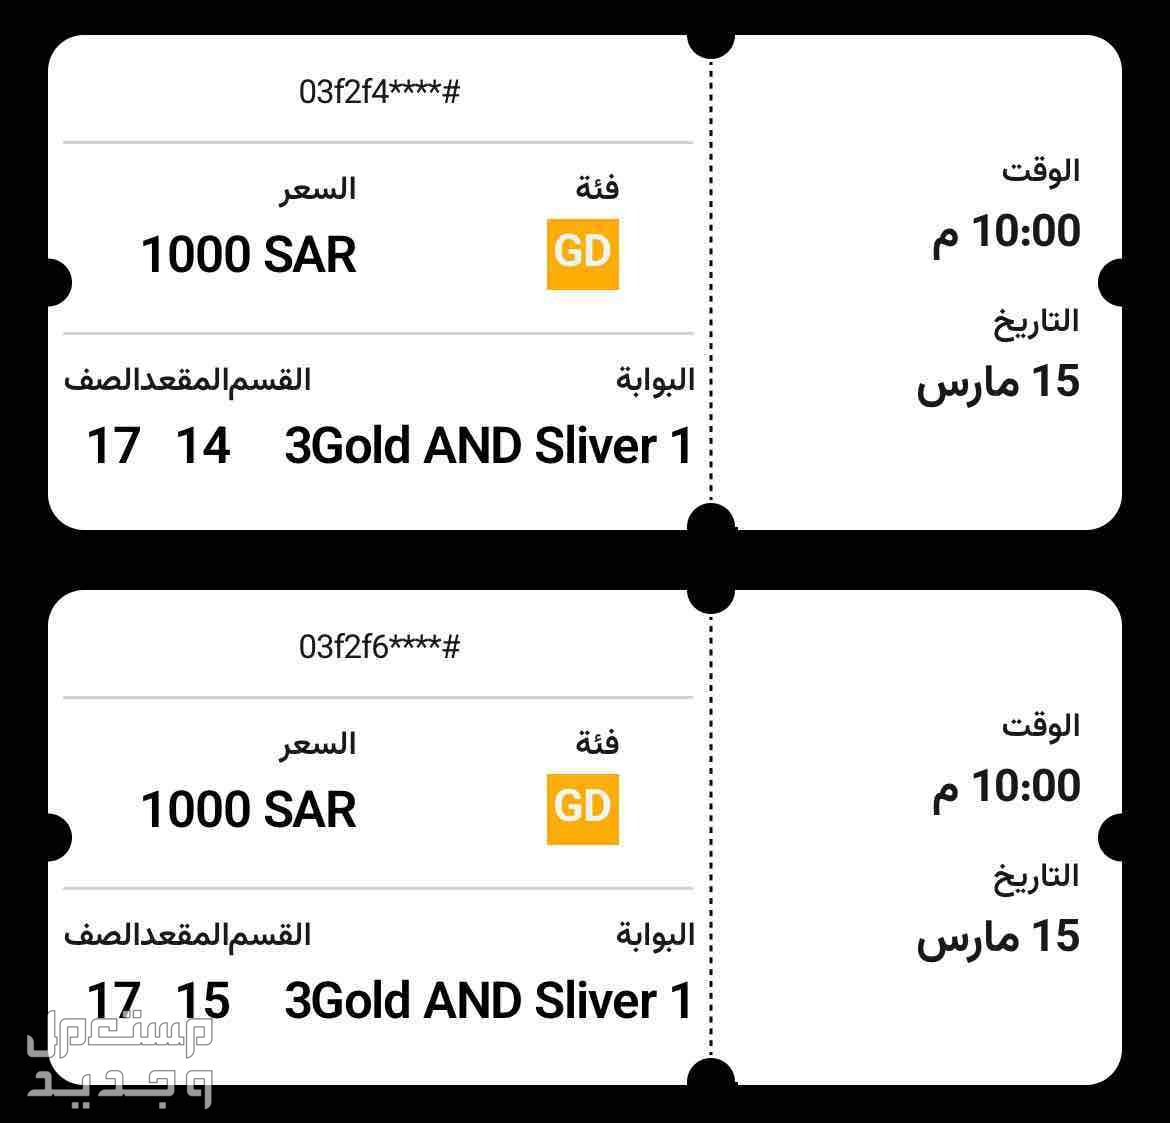 تذاكر منصة ذهبية للاهلي والنصر  في جدة بسعر 500 ريال سعودي